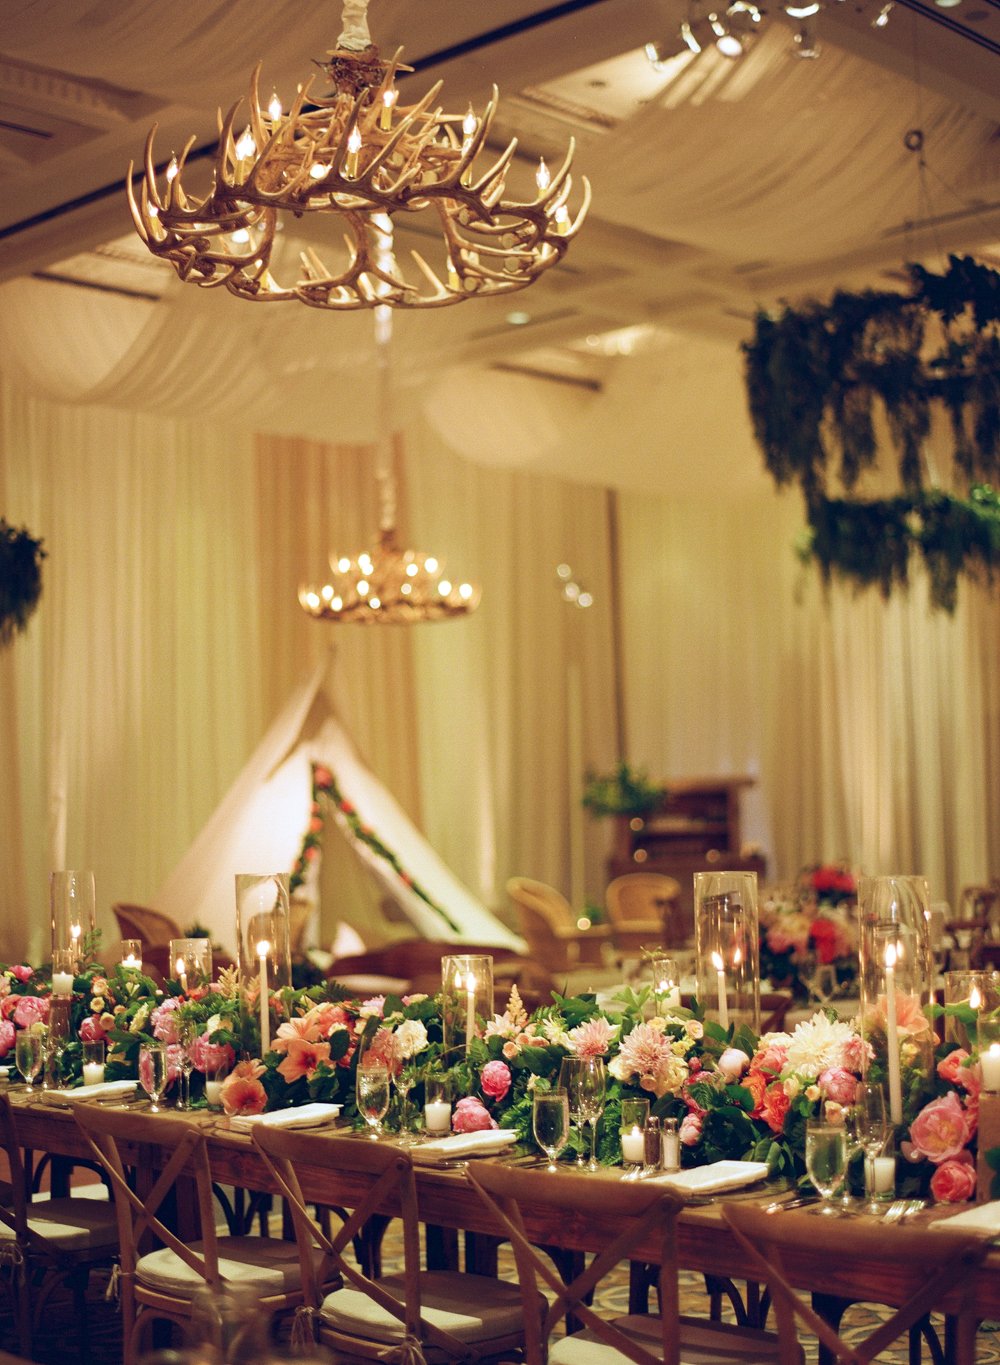 An Elegant Ballroom Wedding At the Bacara Resort and Spa in Santa